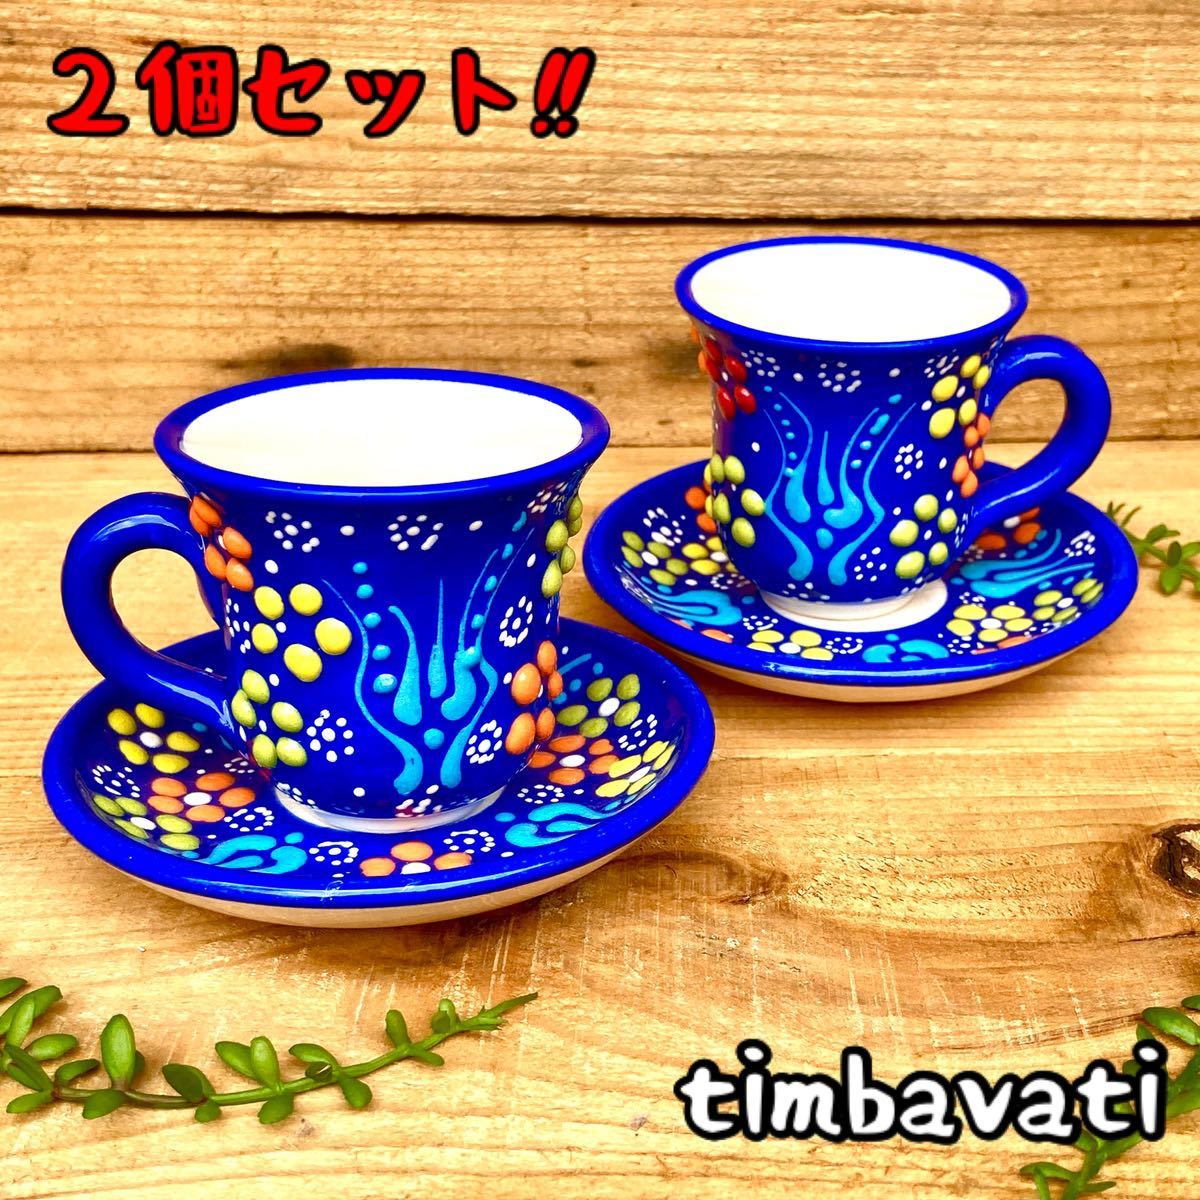 2 件套☆全新☆土耳其陶器茶杯套装带手柄 *蓝色* 手工 Kyutahya 陶器 [有条件免费送货] 145, 茶具, 杯子和碟子, 小咖啡杯